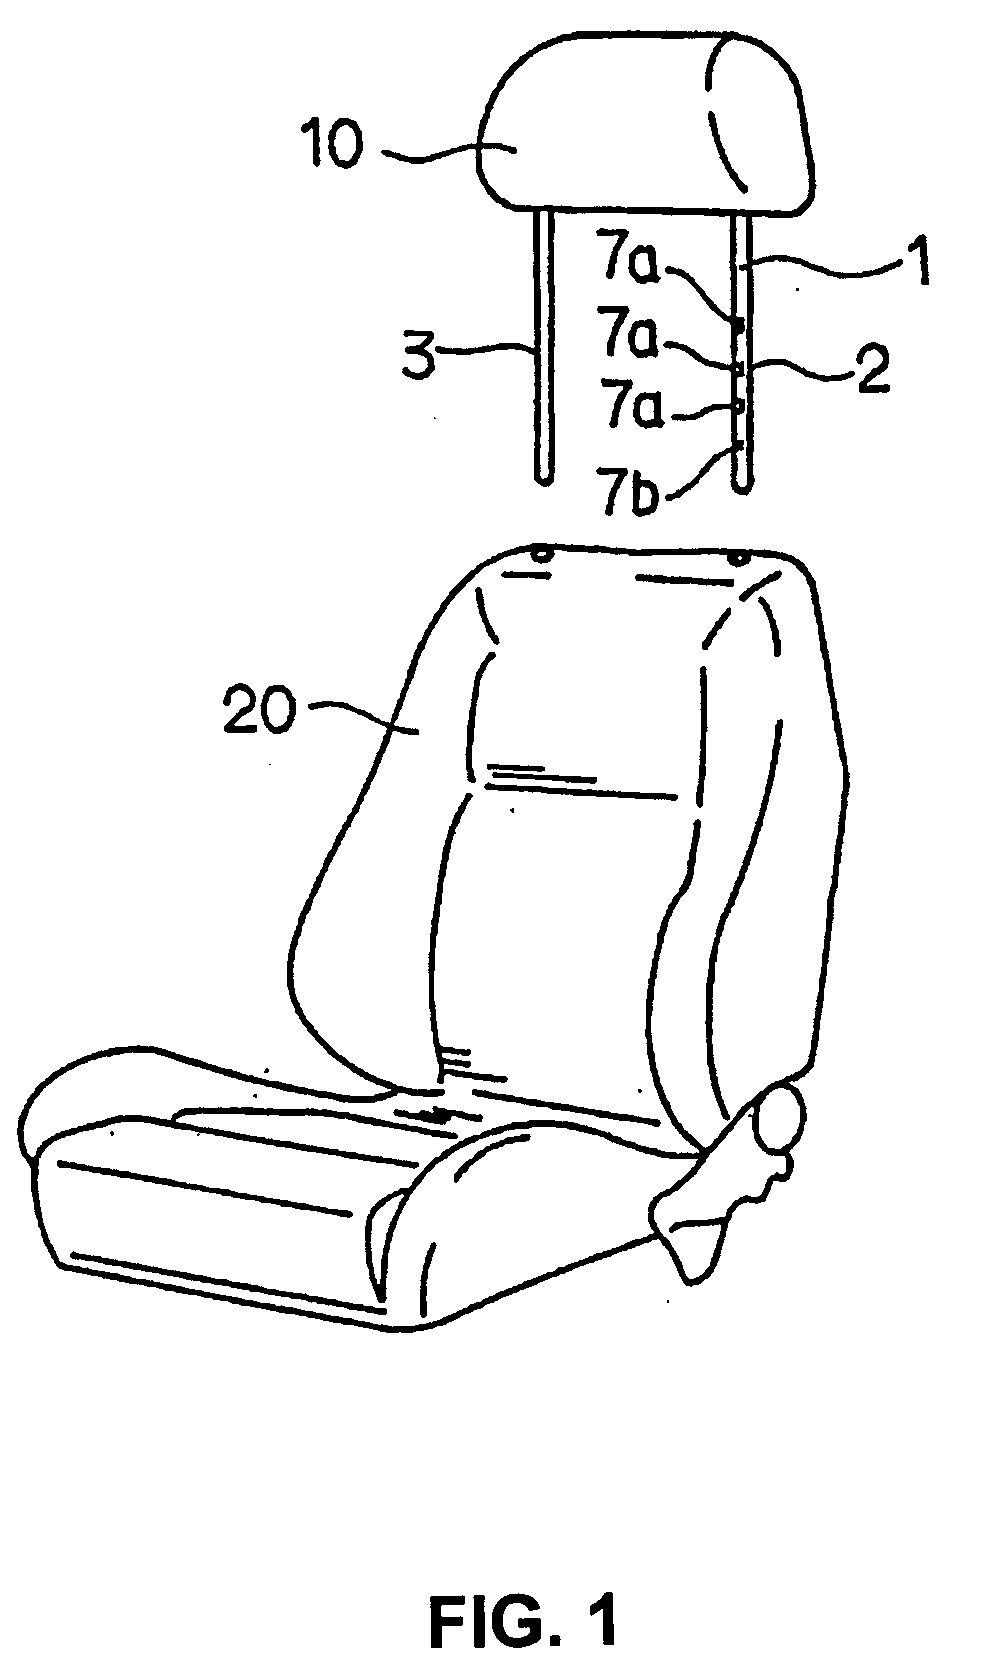 Plastic headrest frame